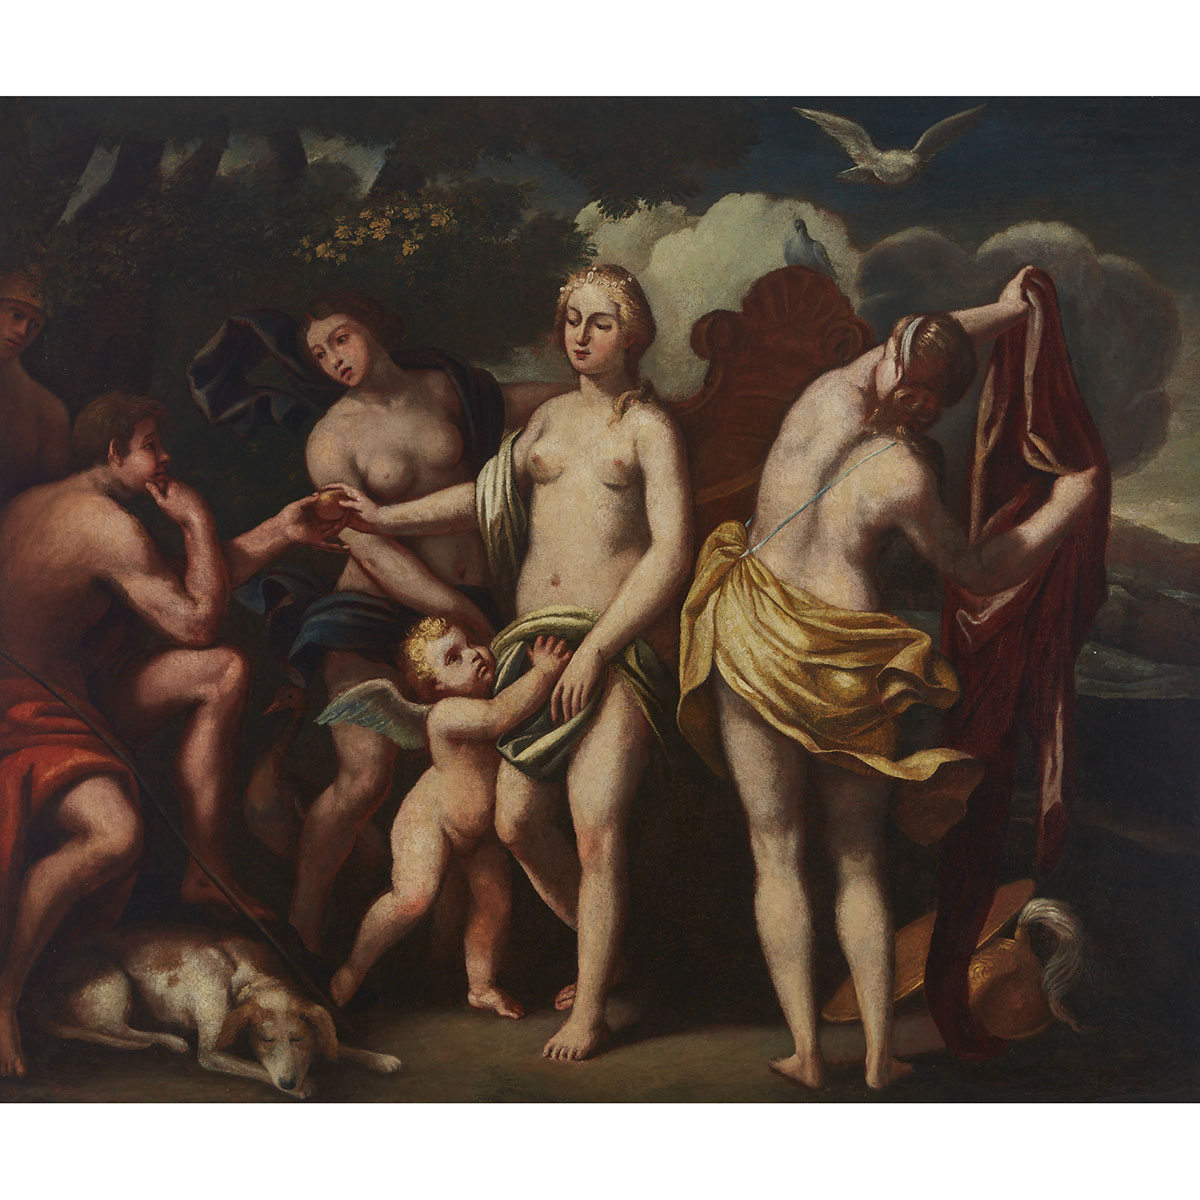 After Raphael (1483-1520)